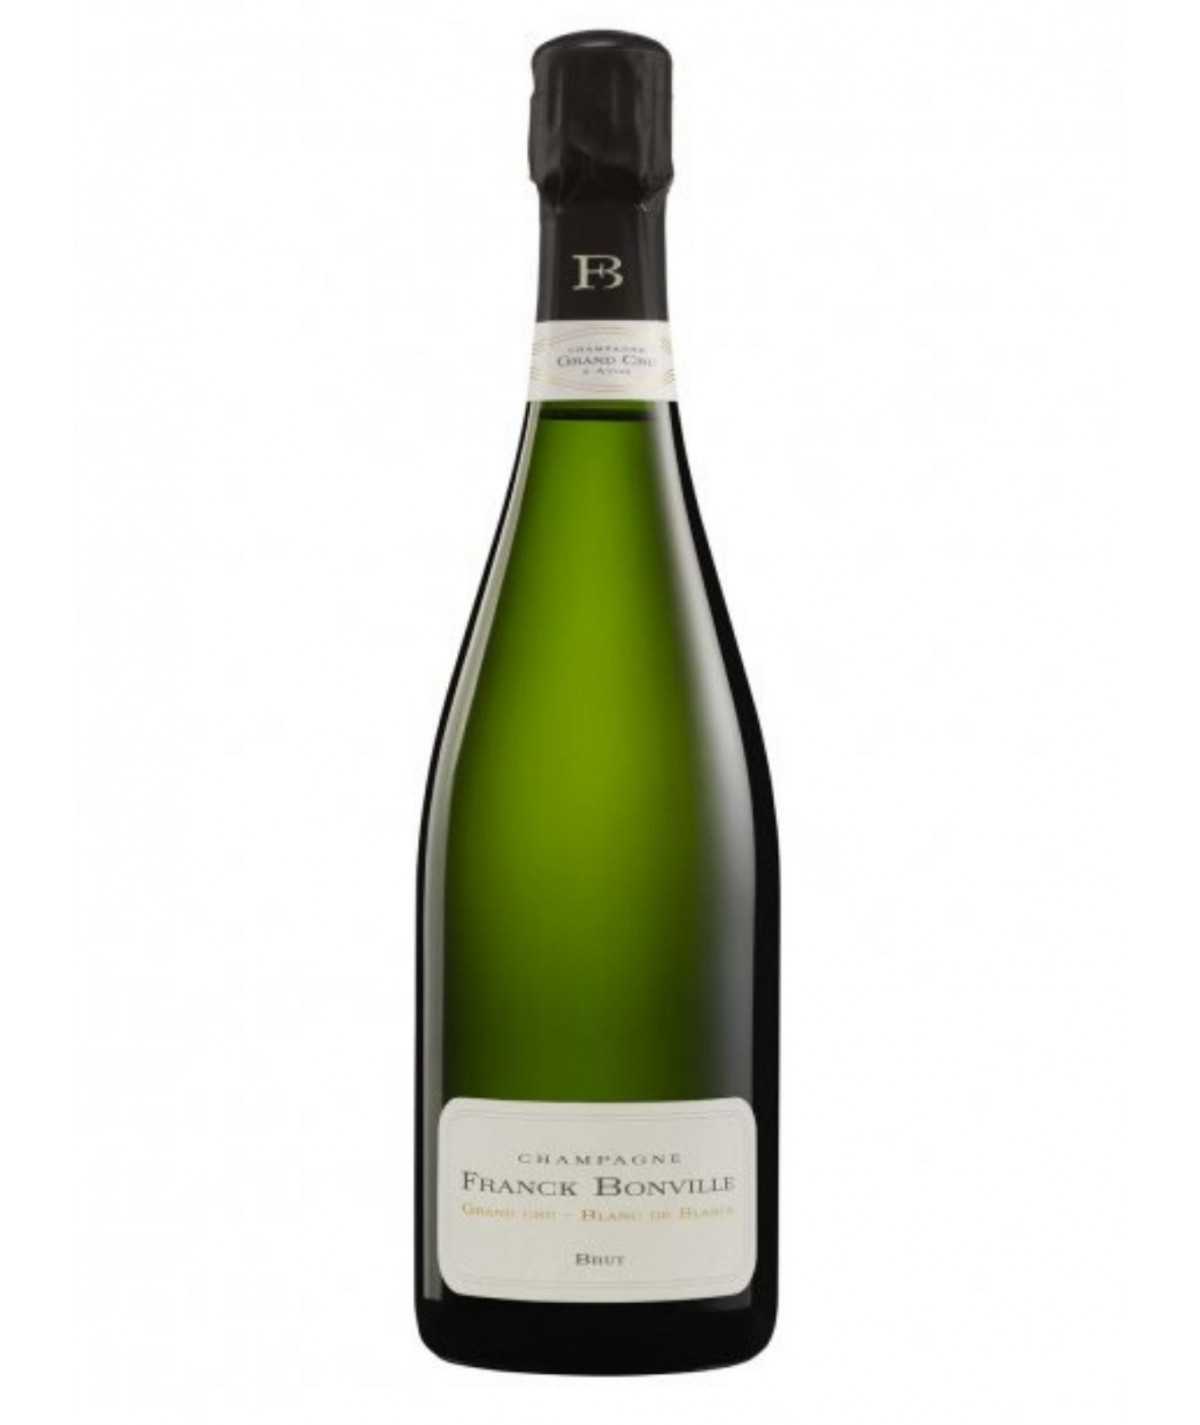 Magnum of FRANCK BONVILLE Champagne Brut Grand Cru Blanc de Blancs